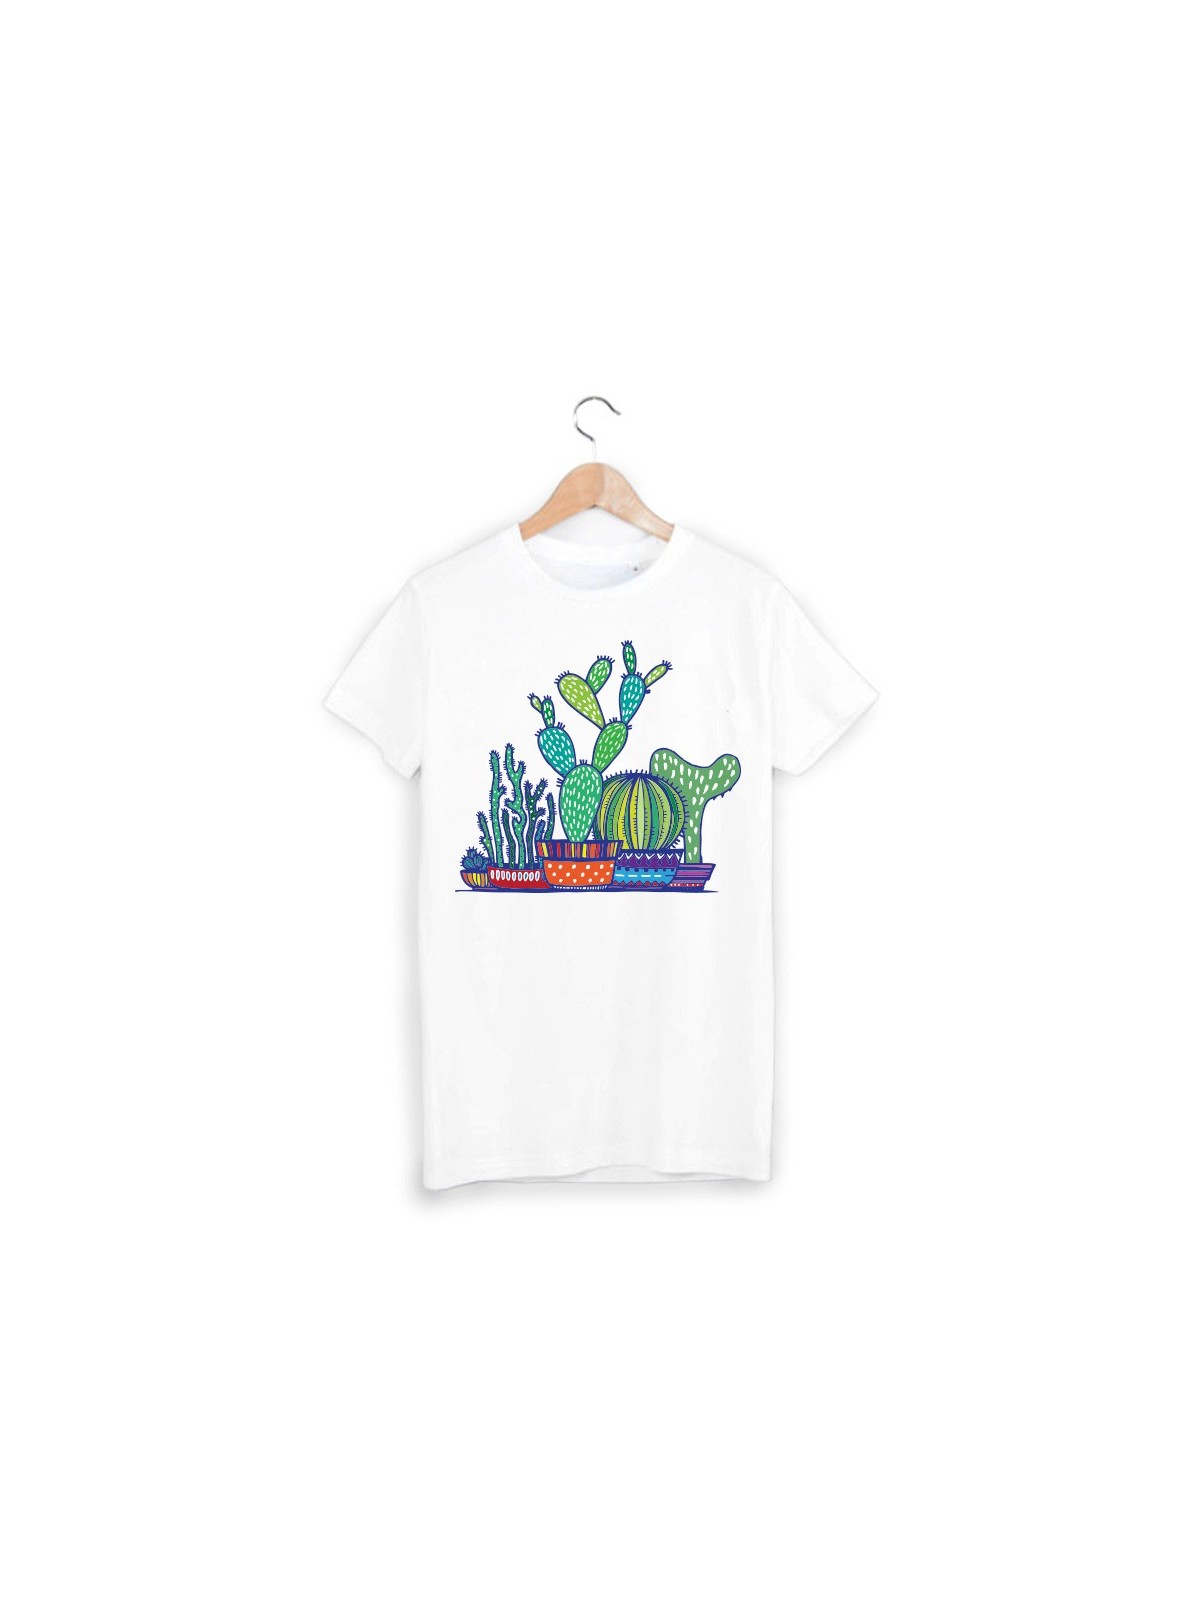 T-Shirt cactus ref 935